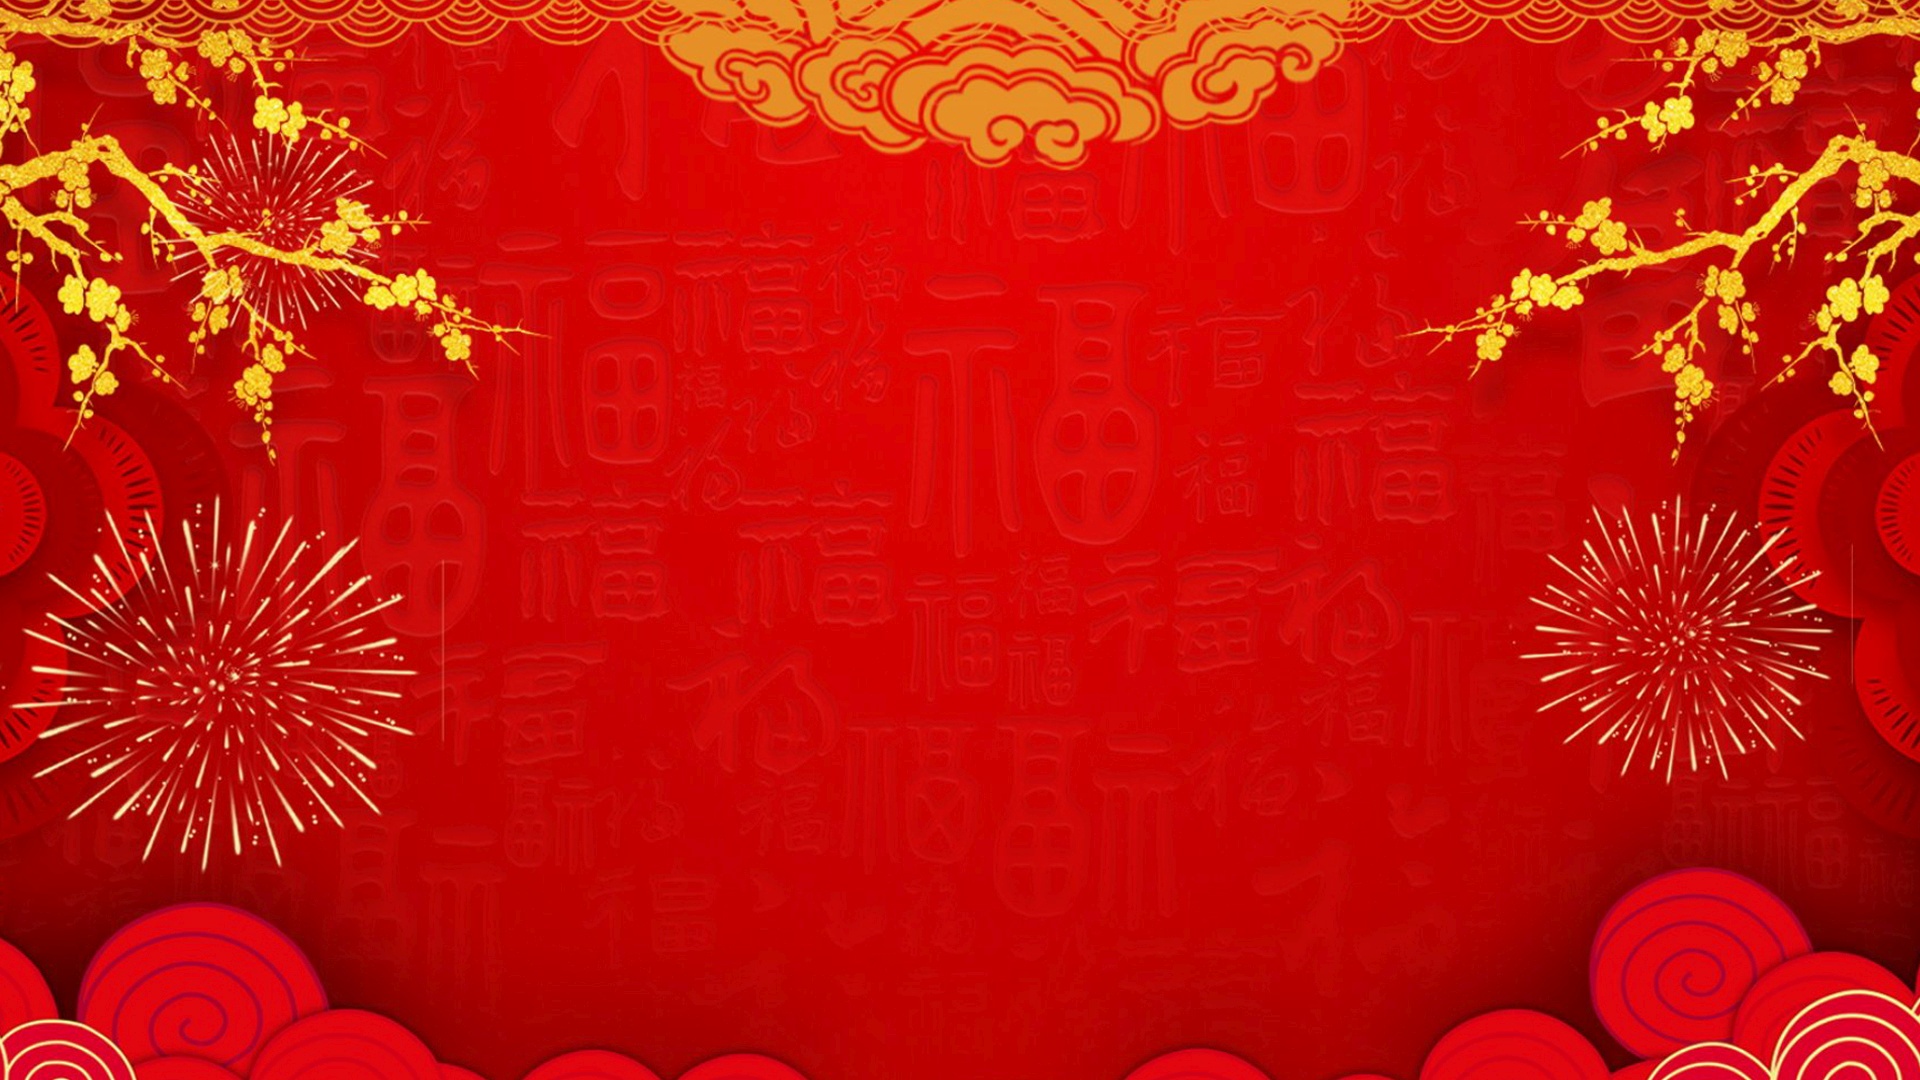 Chinese New Year Minimalist wallpaper hd